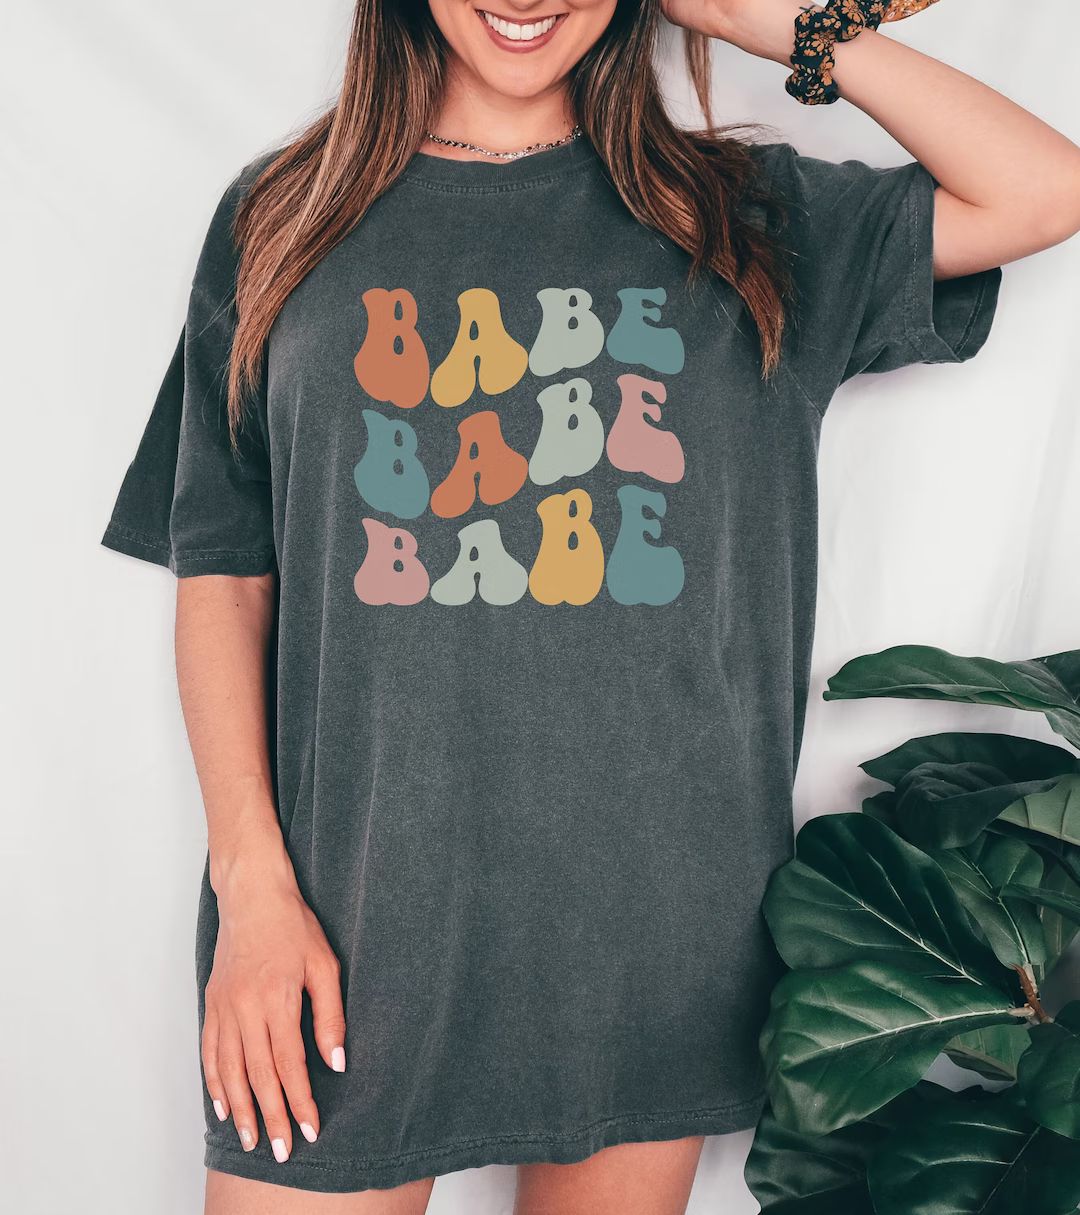 Retro Babe Shirt, Comfort Colors Babe Oversized Bachelorette Shirts, Wedding Party, Bridal Shower... | Etsy (US)